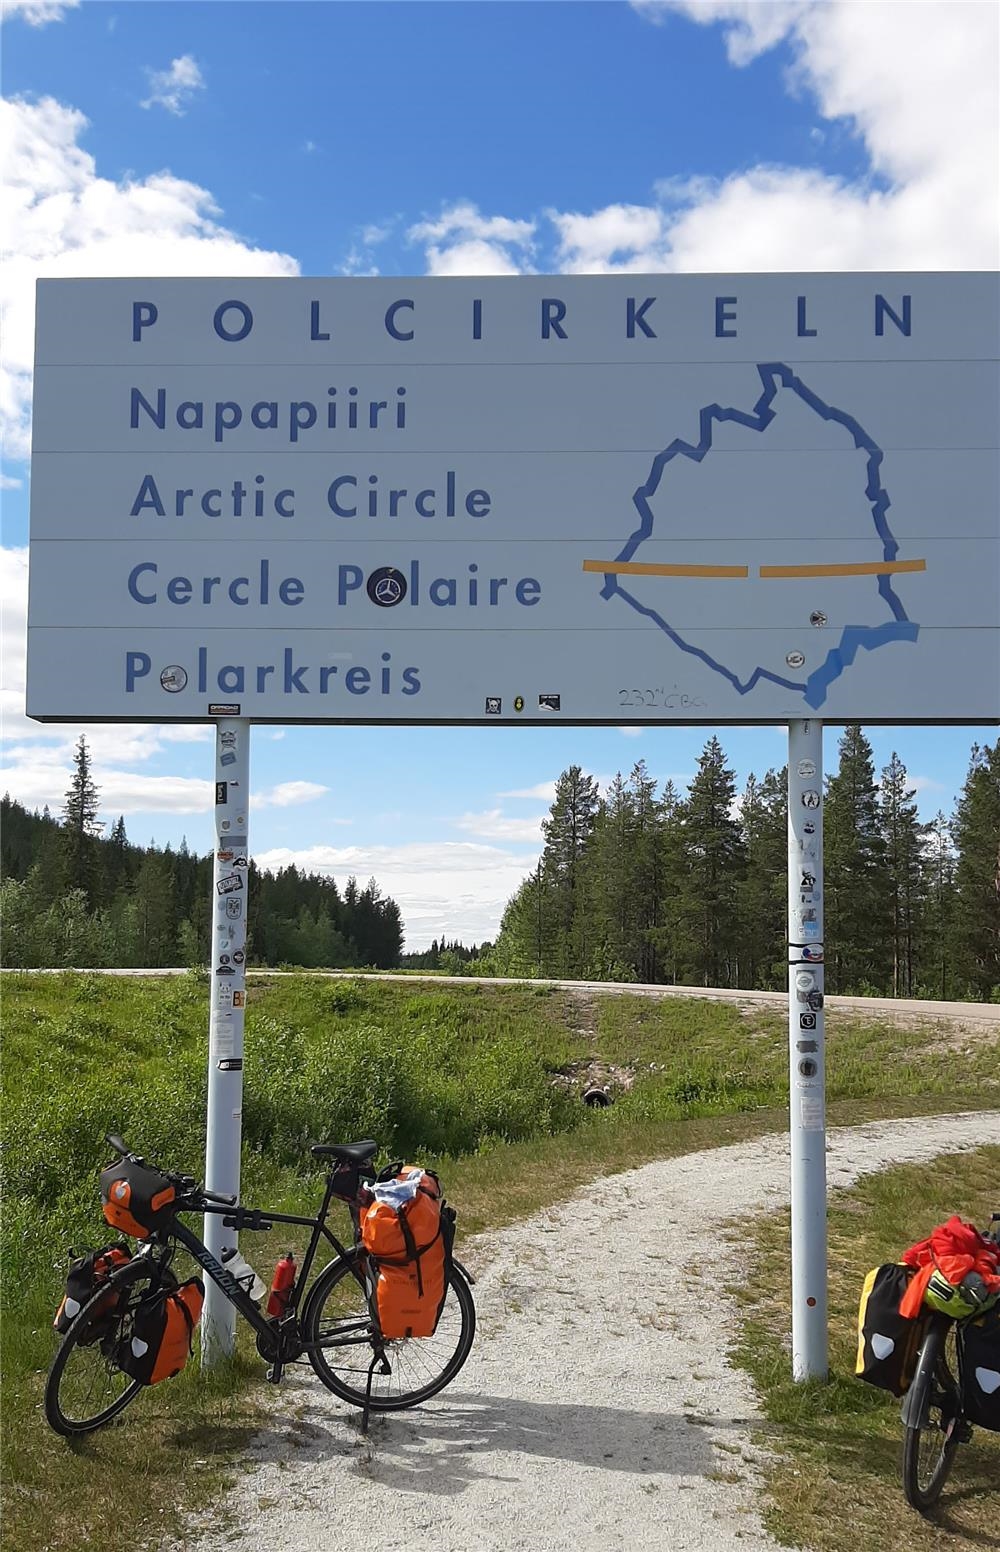 Fahrrad mit Packtaschen parkt an einem Straßenschild mit der Aufschrift "Polarkreis" in mehreren Sprachen (c) Bettina Prien, Offenbach)